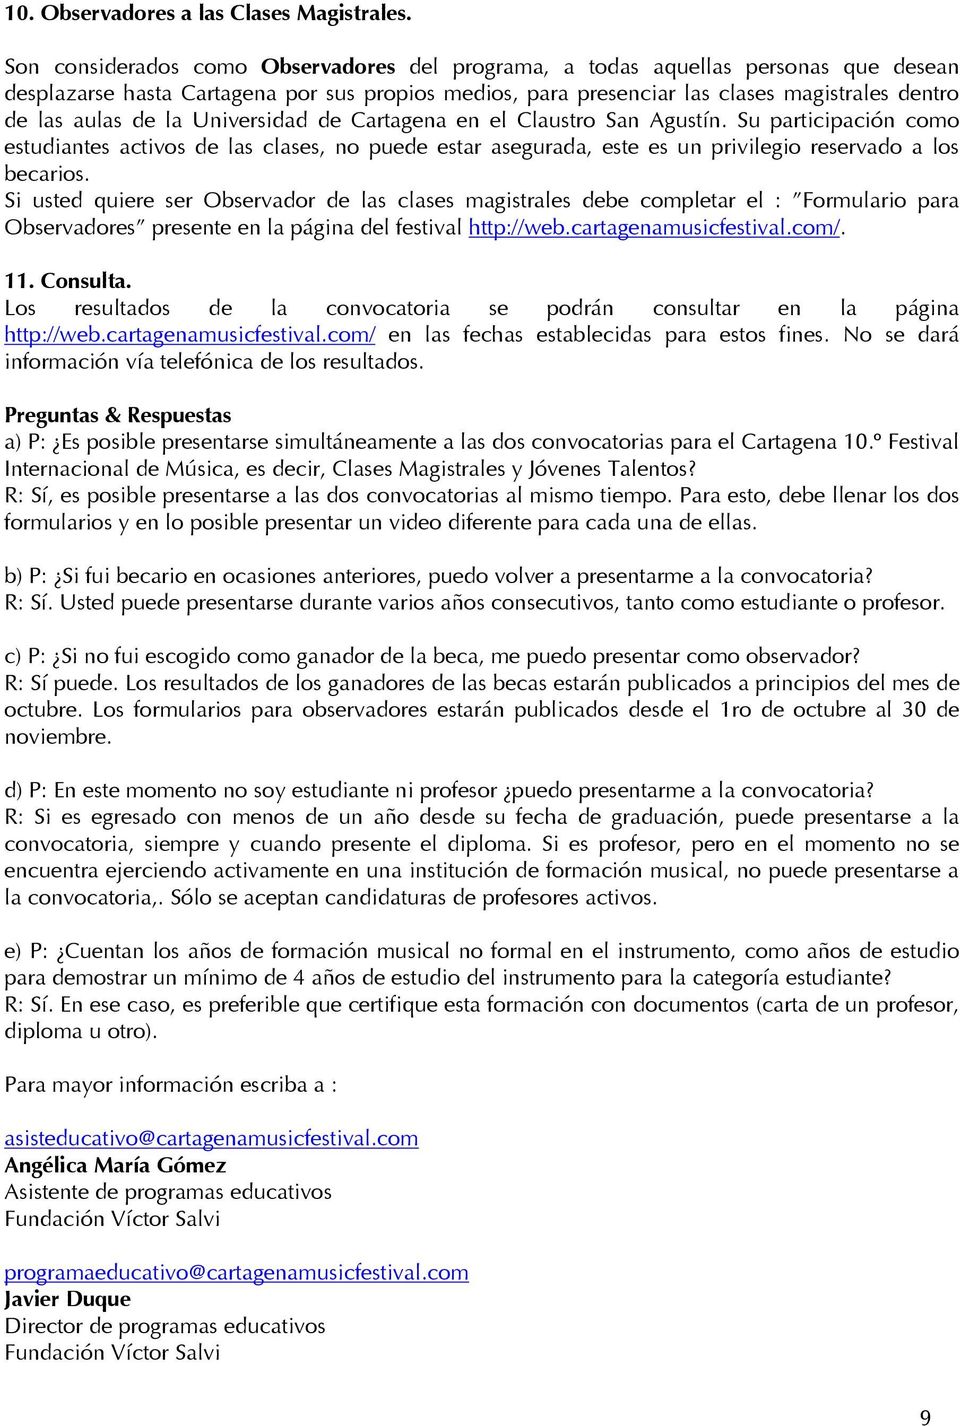 la Universidad de Cartagena en el Claustro San Agustín. Su participación como estudiantes activos de las clases, no puede estar asegurada, este es un privilegio reservado a los becarios.